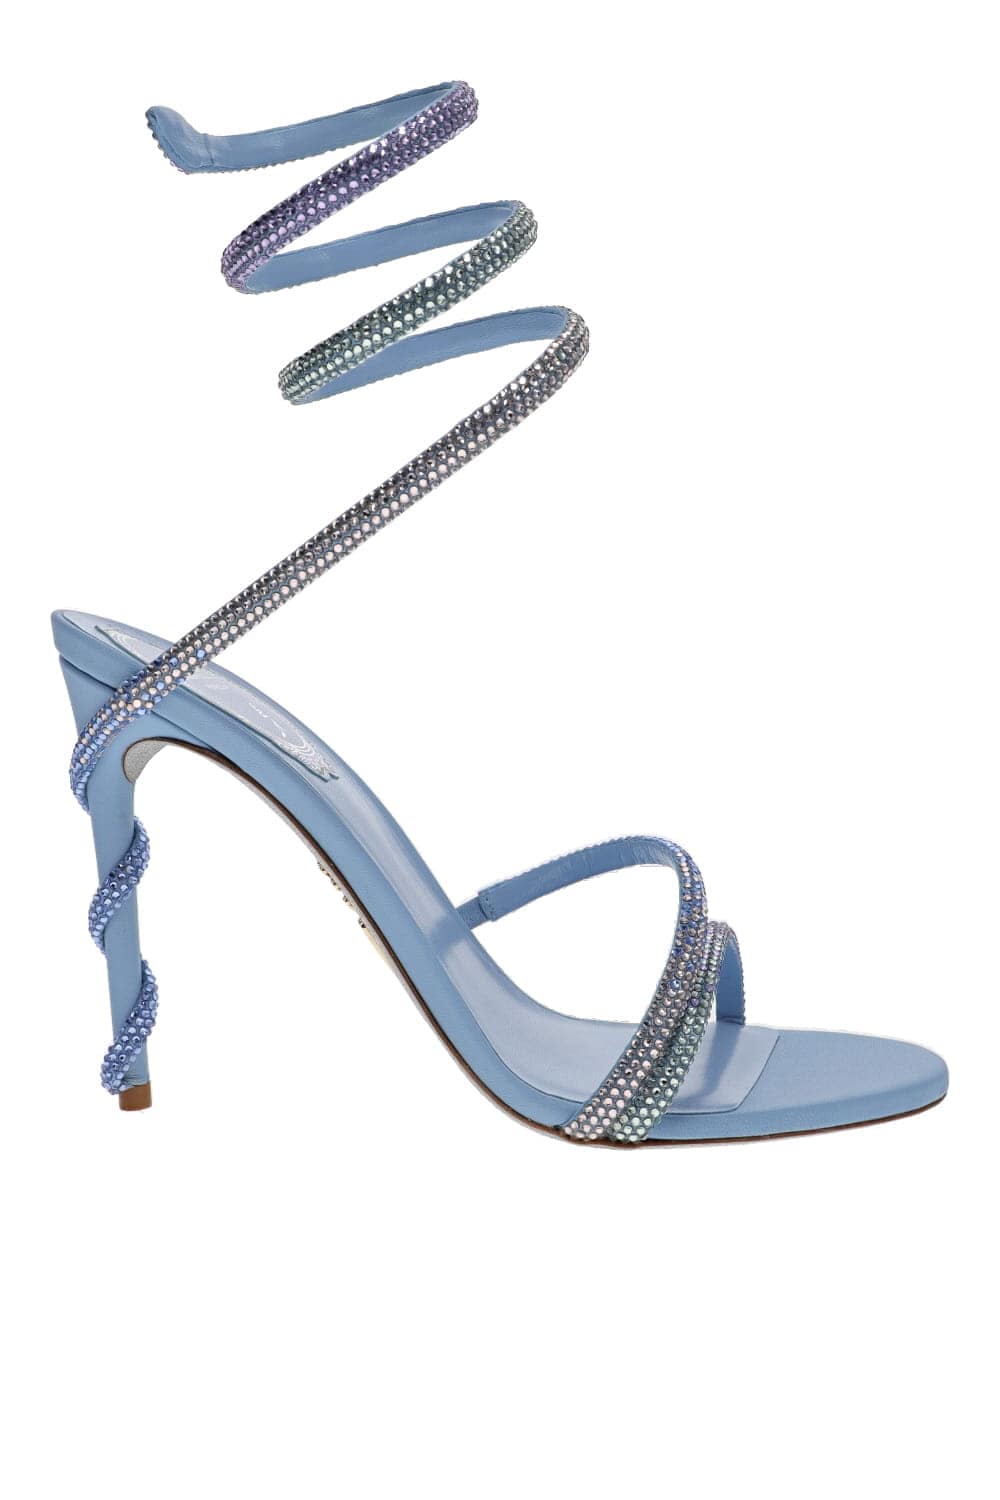 RENE CAOVILLA Margot Blue Violet Crystal Ankle Wrap Heels